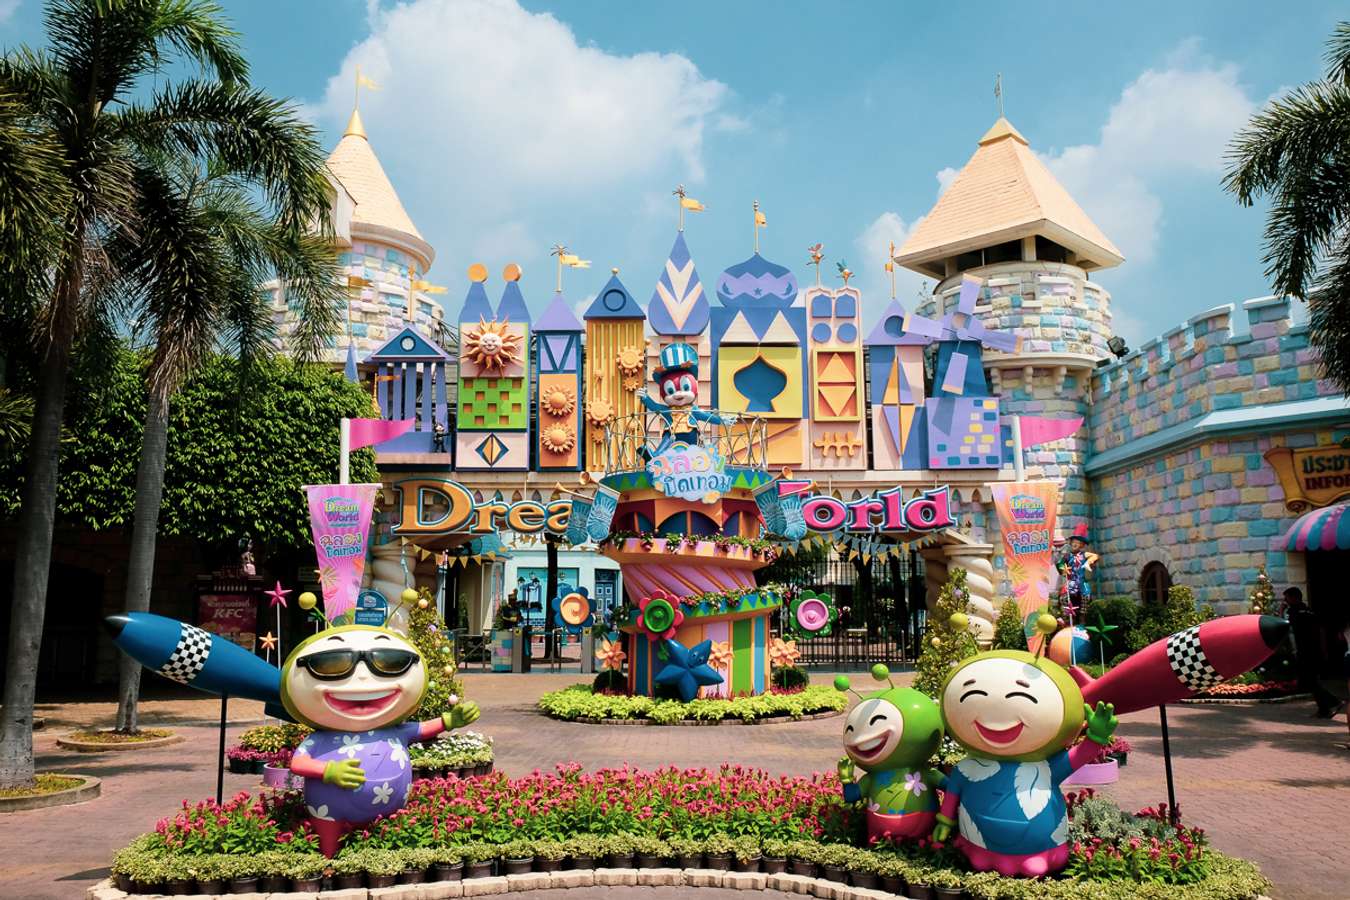 ดรีมเวิลด์ Dreamworld สวนสนุกยืนหนึ่งในทุกความทรงจำแสนสุขของคนไทย